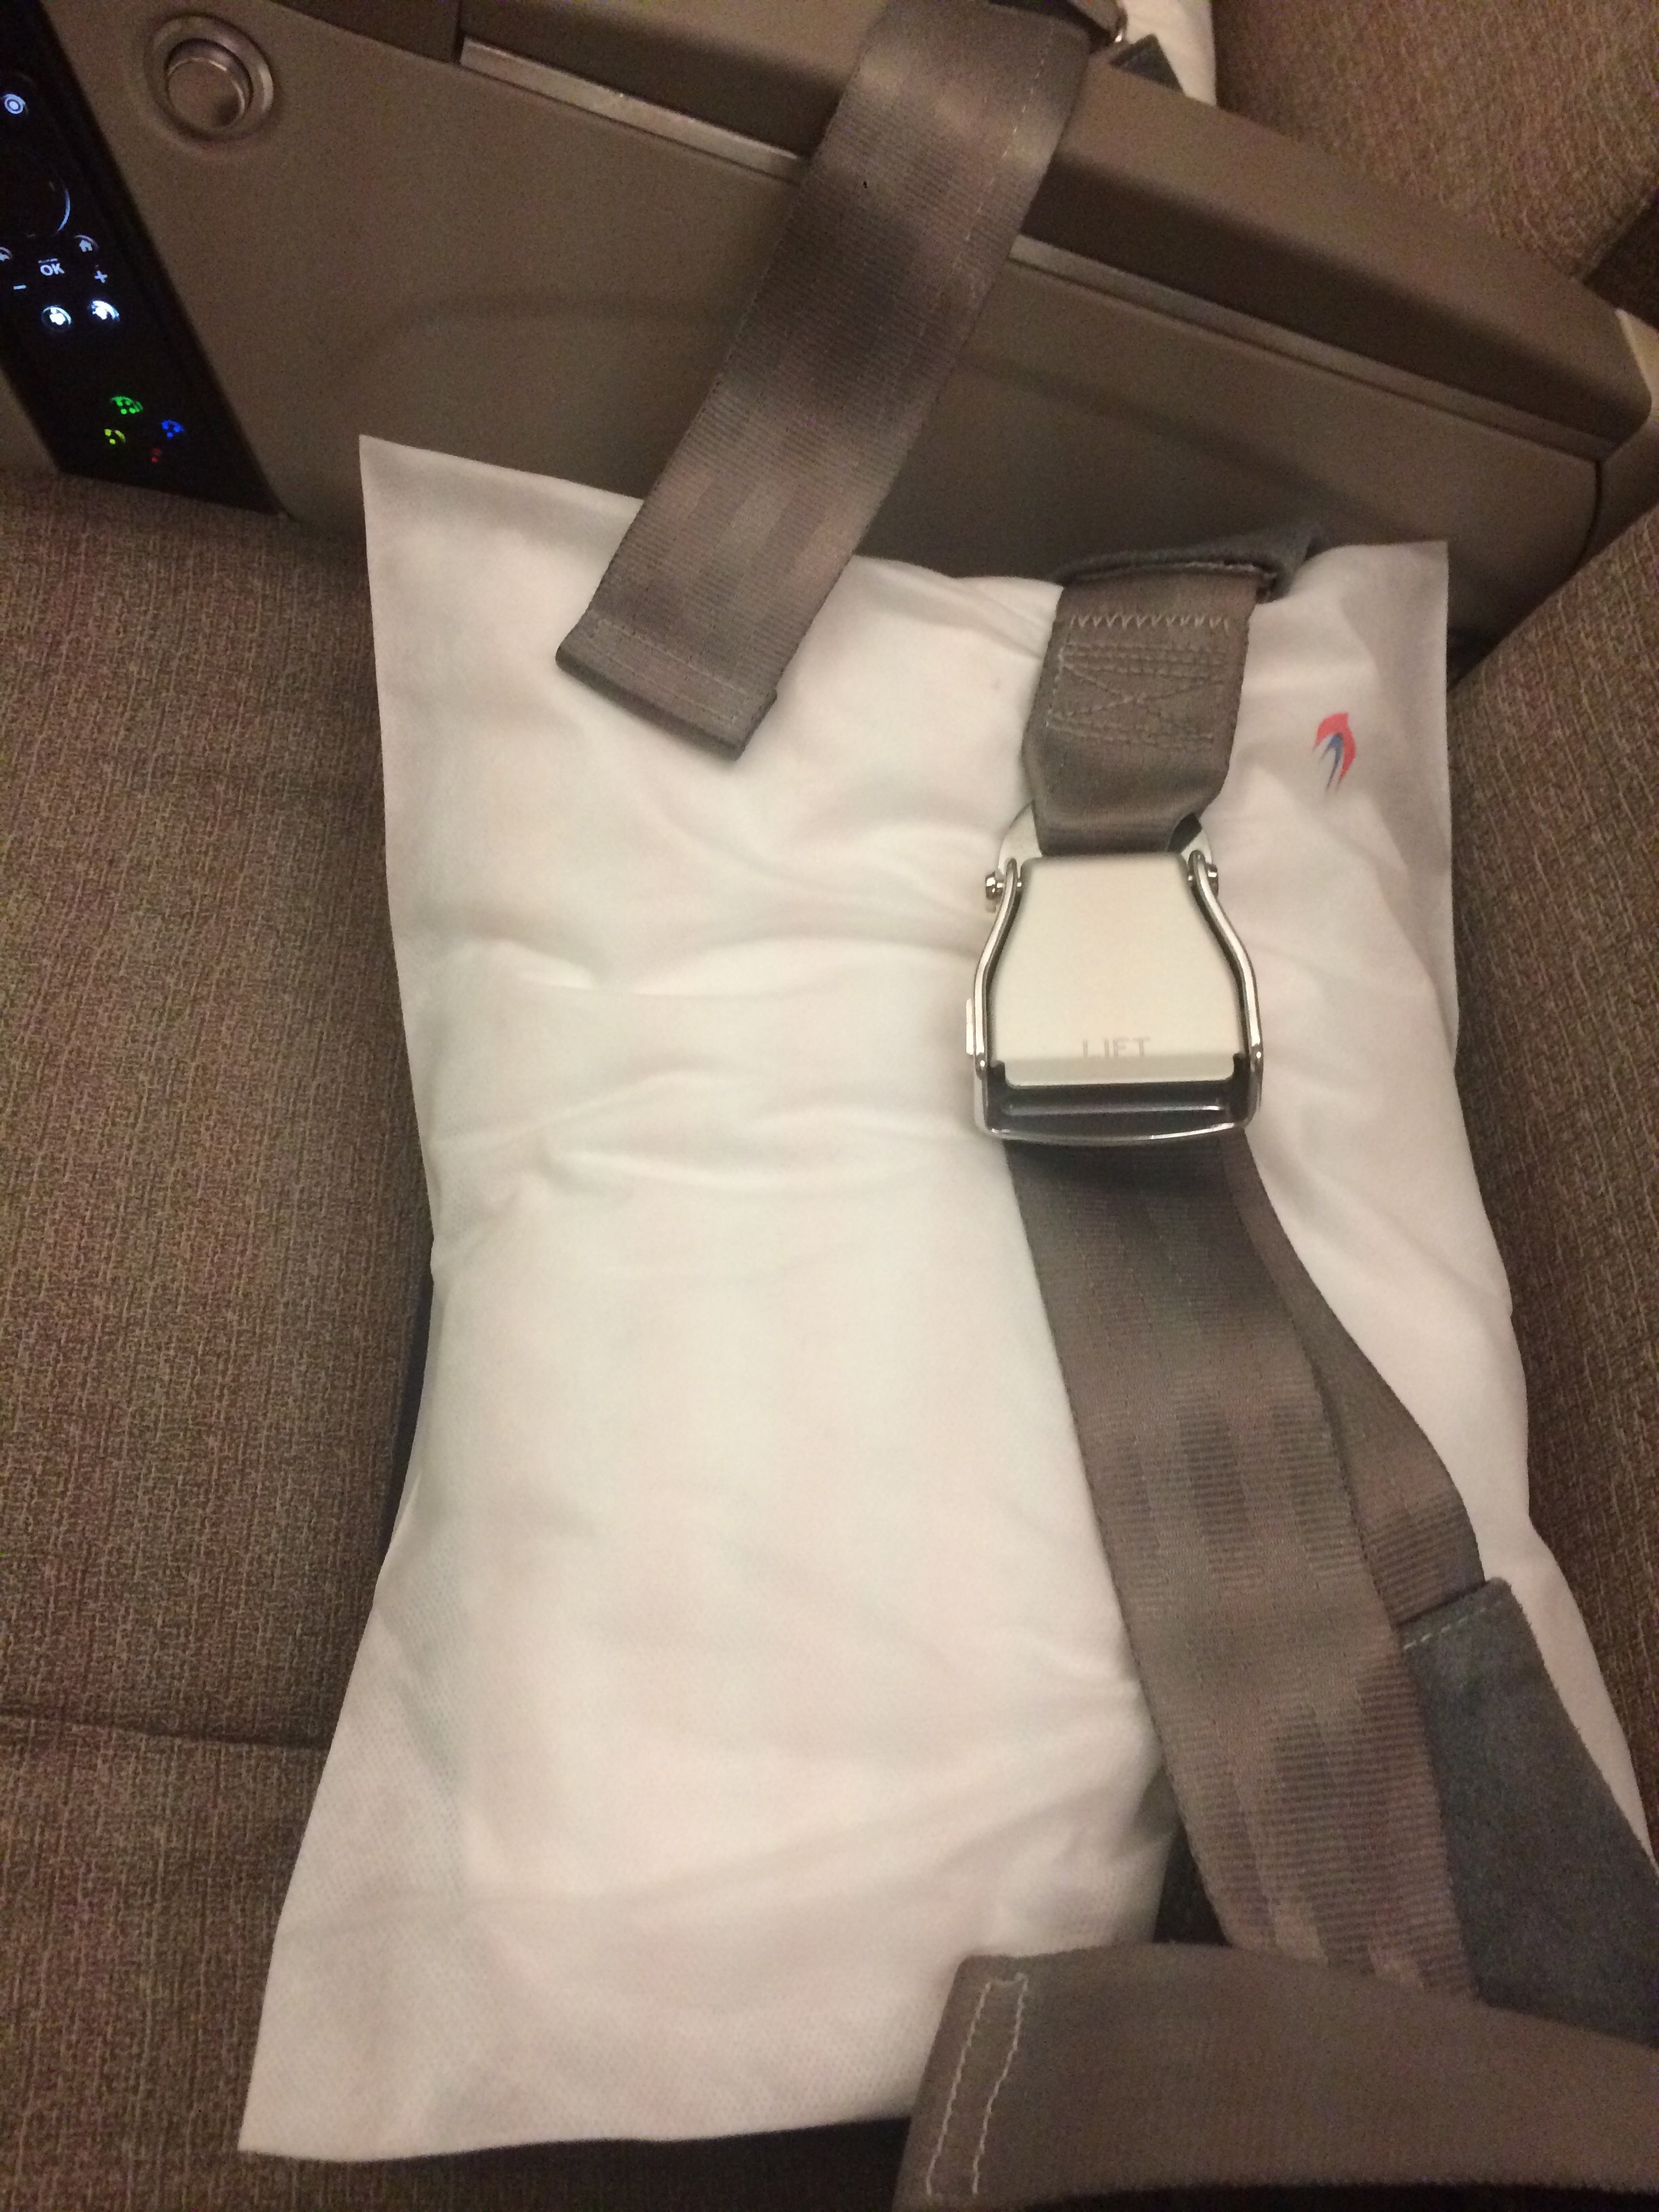 a seat belt on a pillow